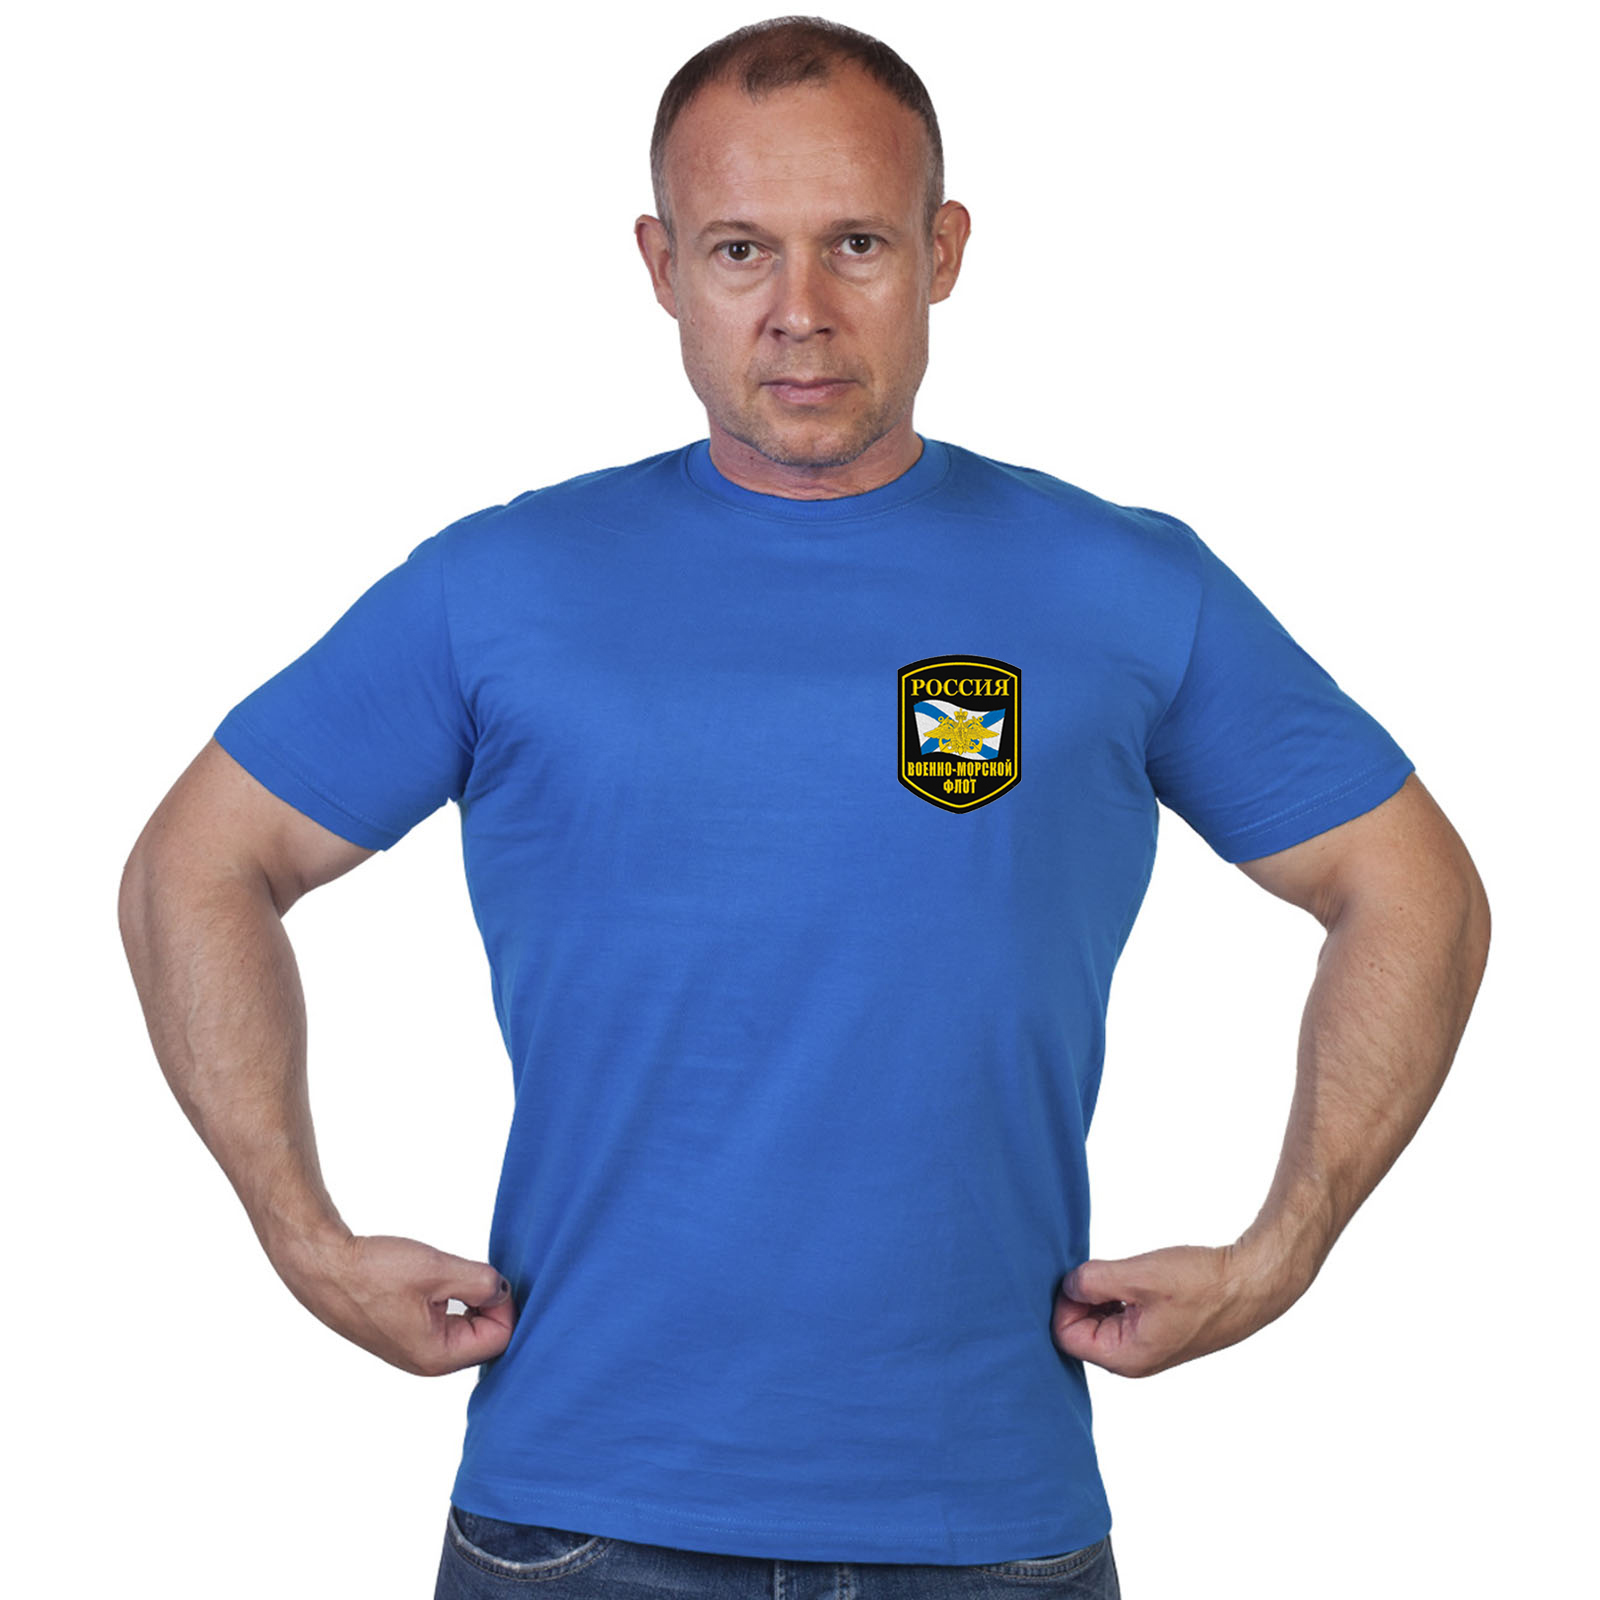 Васильковая футболка с шевроном Военно-морского флота России